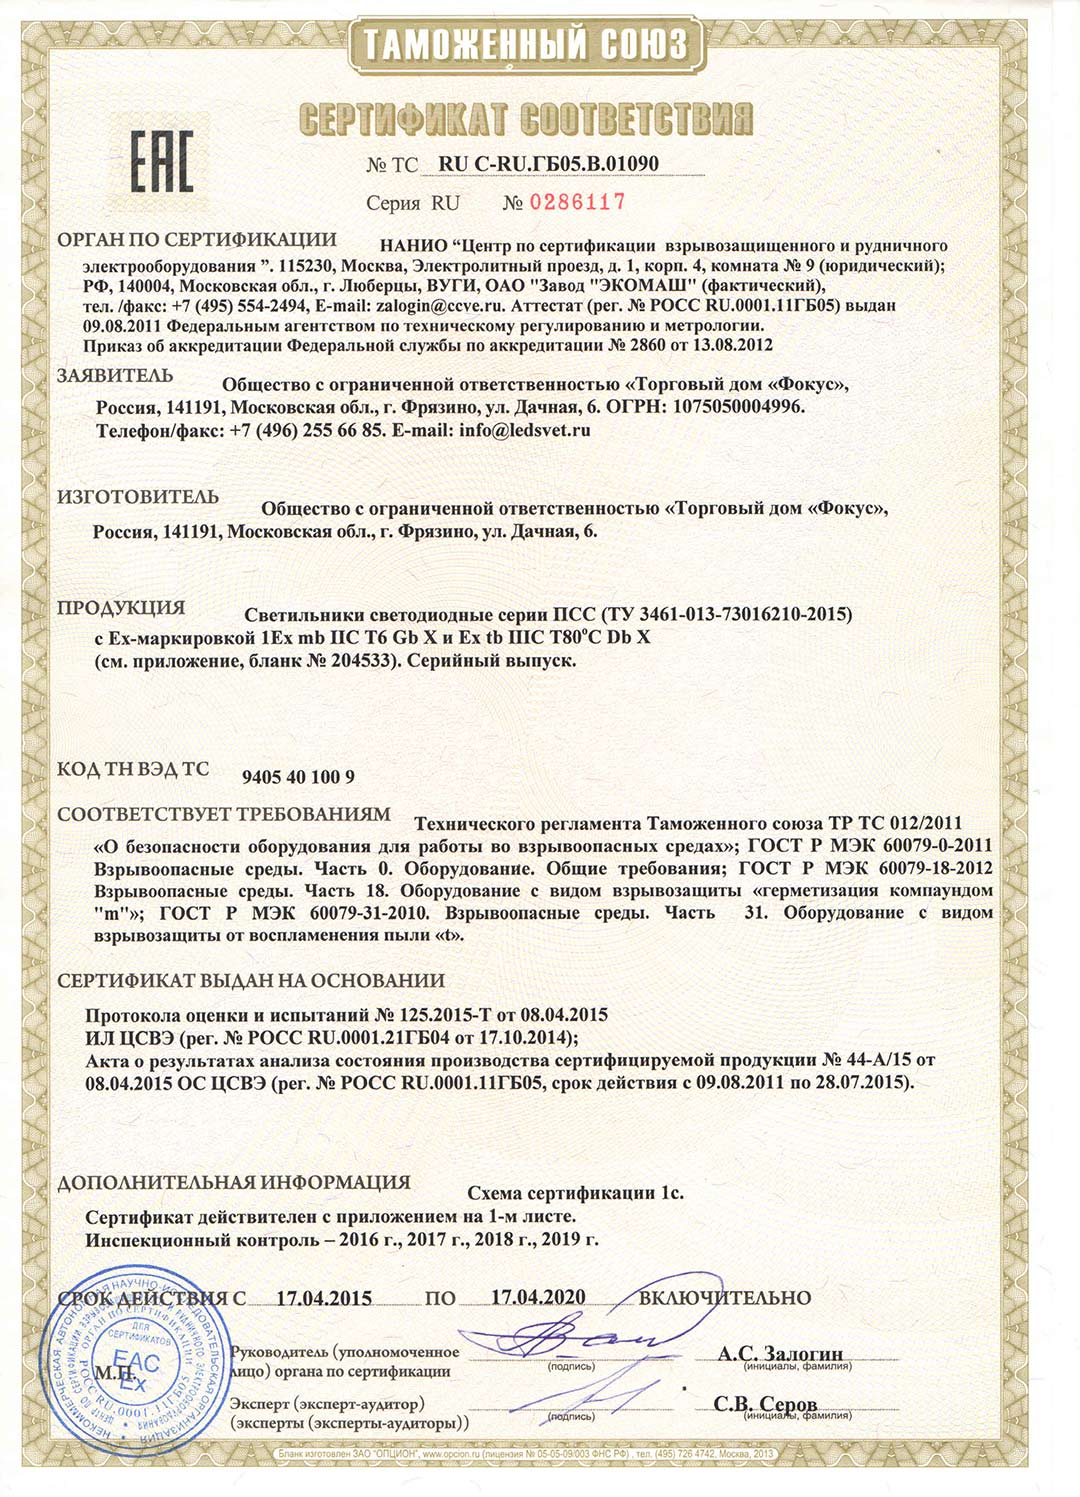 Сертификат соответствия Таможенного союза на светильники ПСС Ex